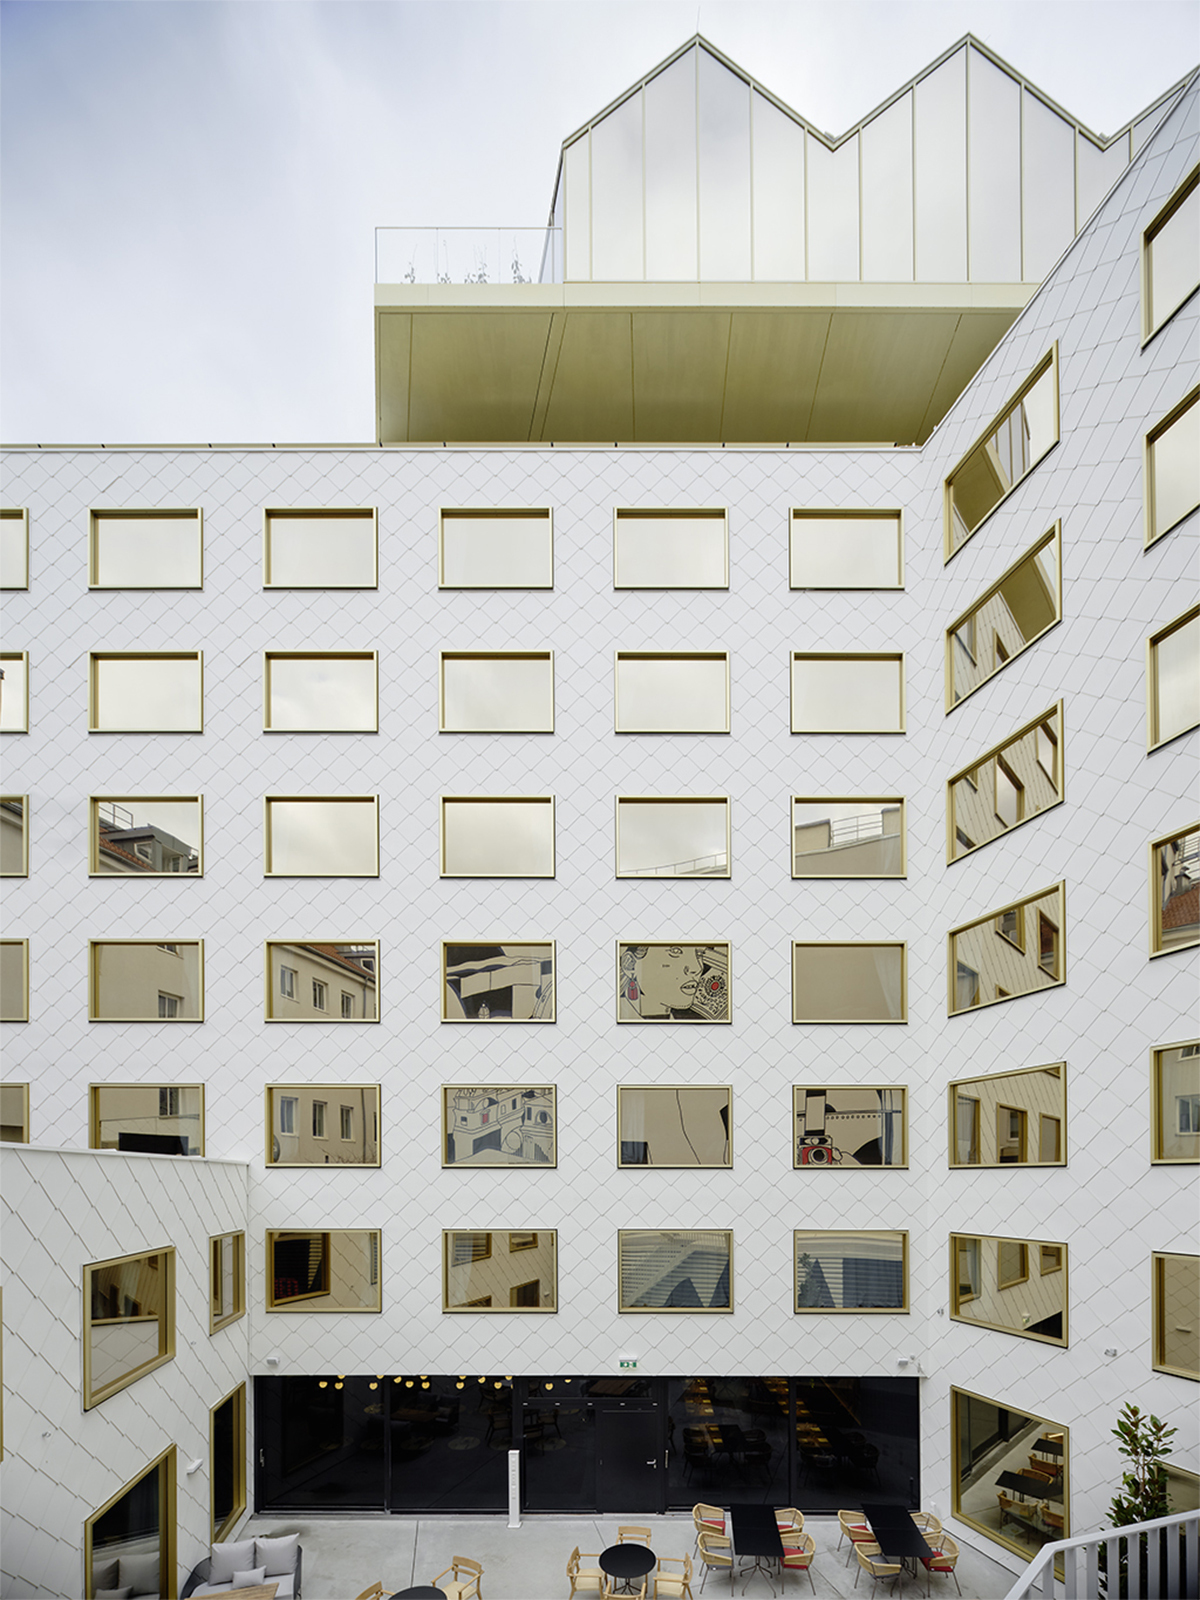 图片[1]|维也纳丽芮酒店 The Rock / INNOCAD Architecture|ART-Arrakis | 建筑室内设计的创新与灵感